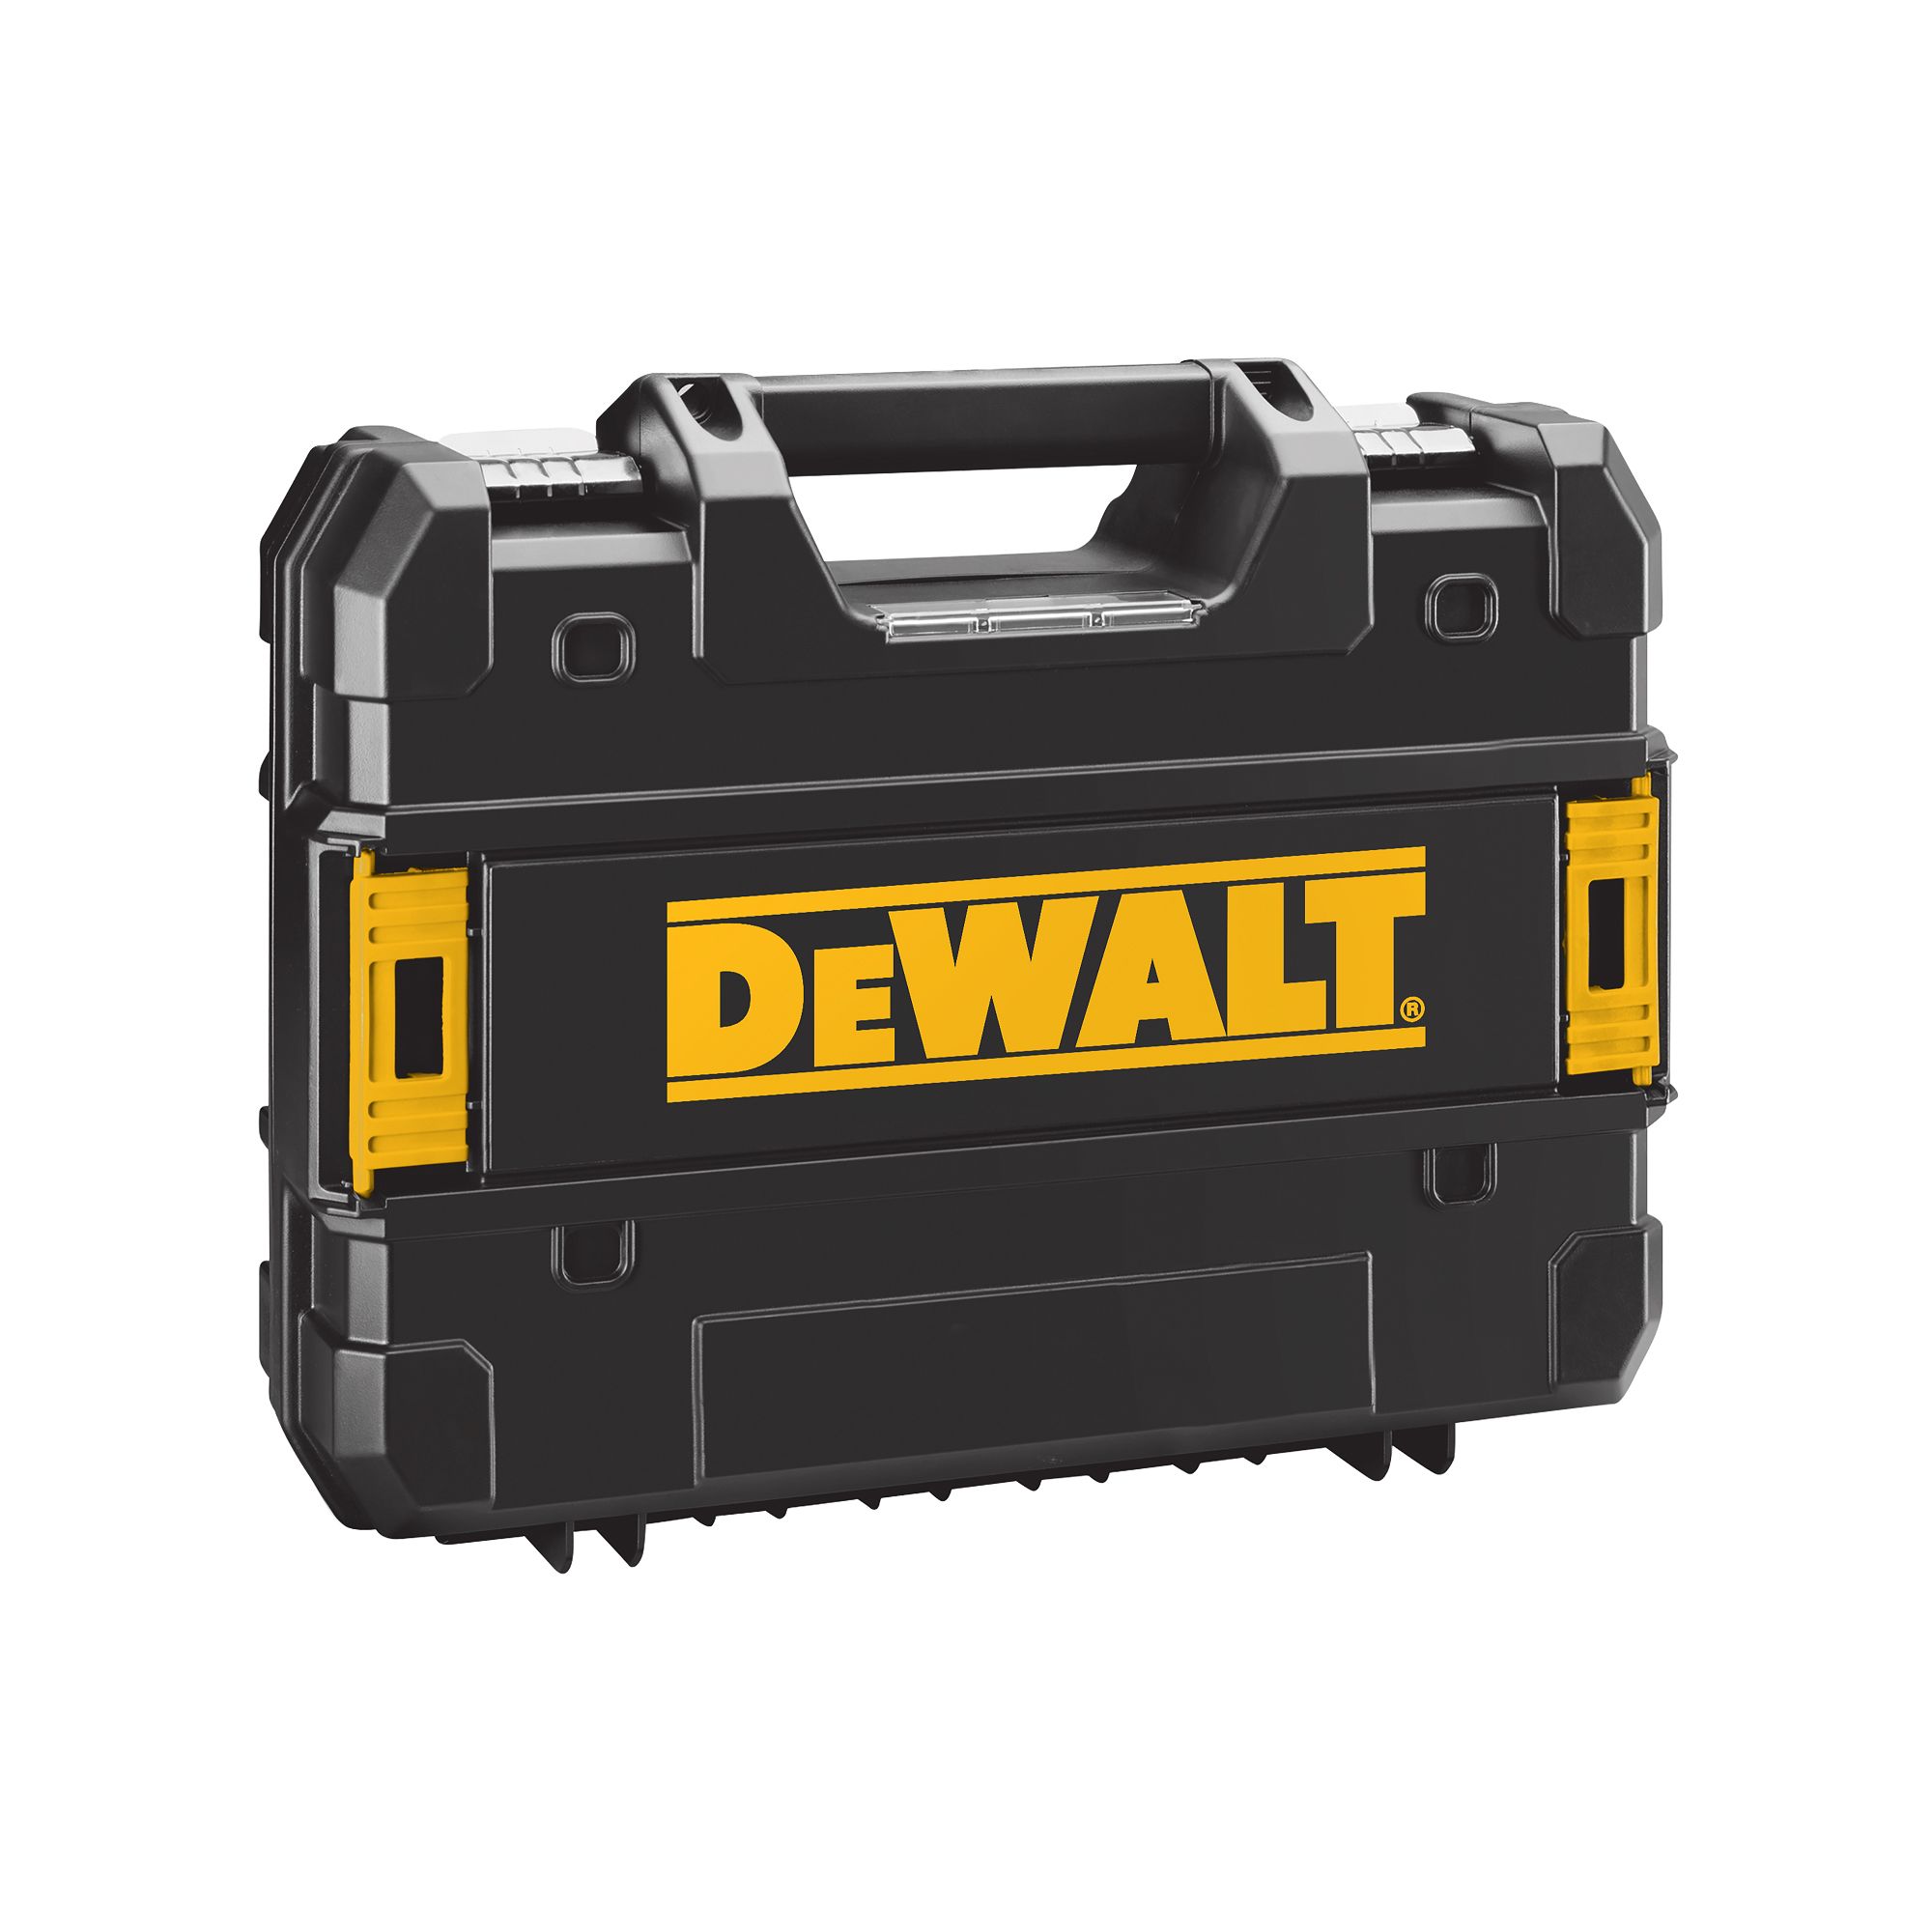 DeWalt XR 18V Li-ion Brushless Cordless Combi drill (1 x 4Ah) - DCD778M1T-GB